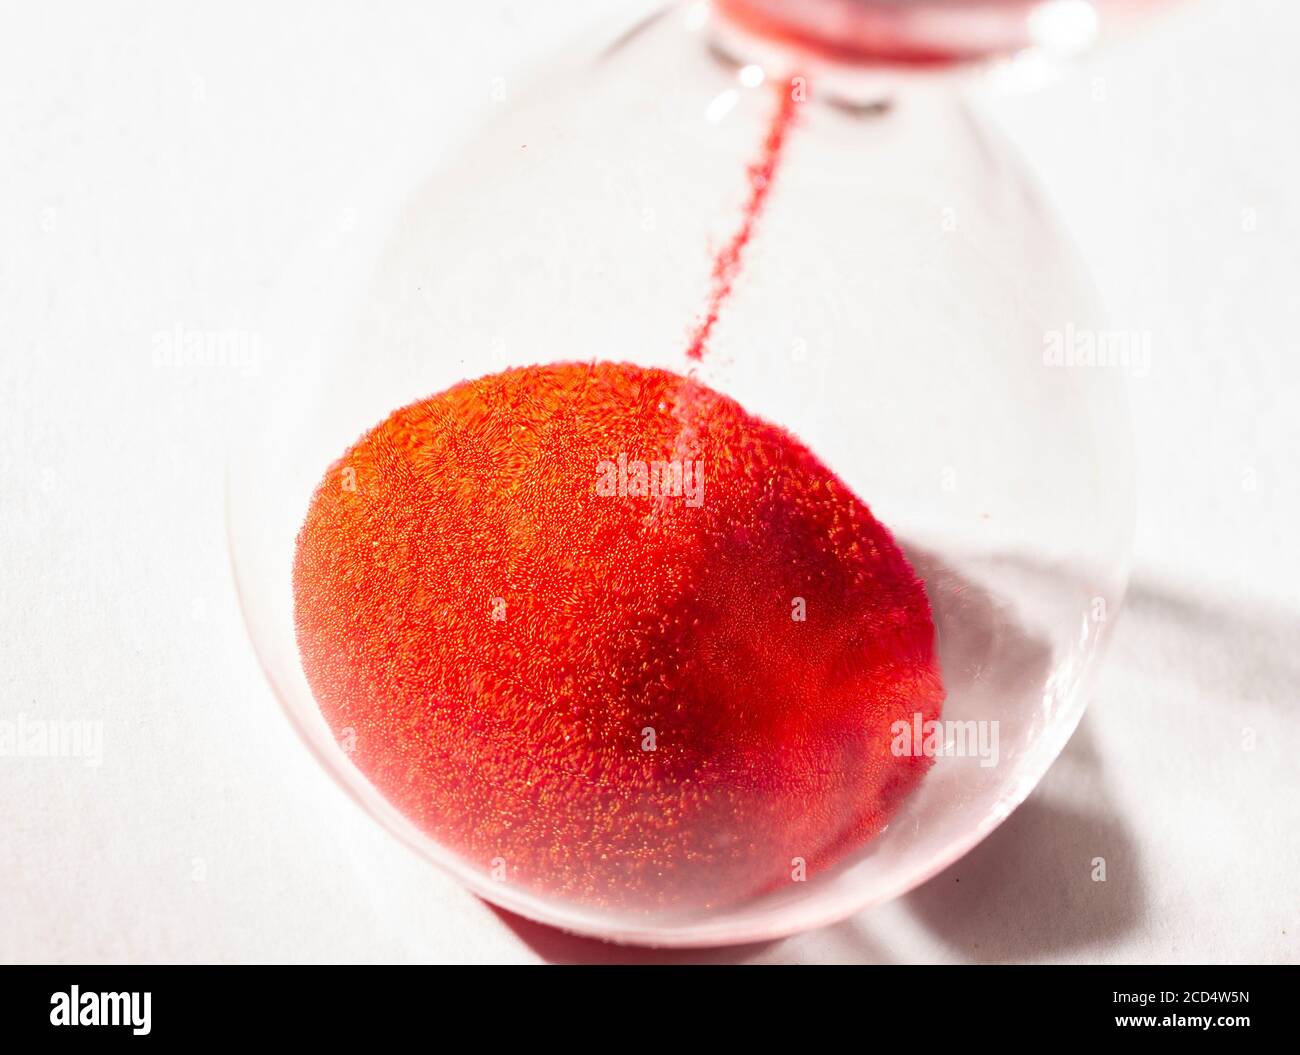 clessidra con sabbia rossa utilizzata per misurare il flusso temporale, fotografia macro Foto Stock